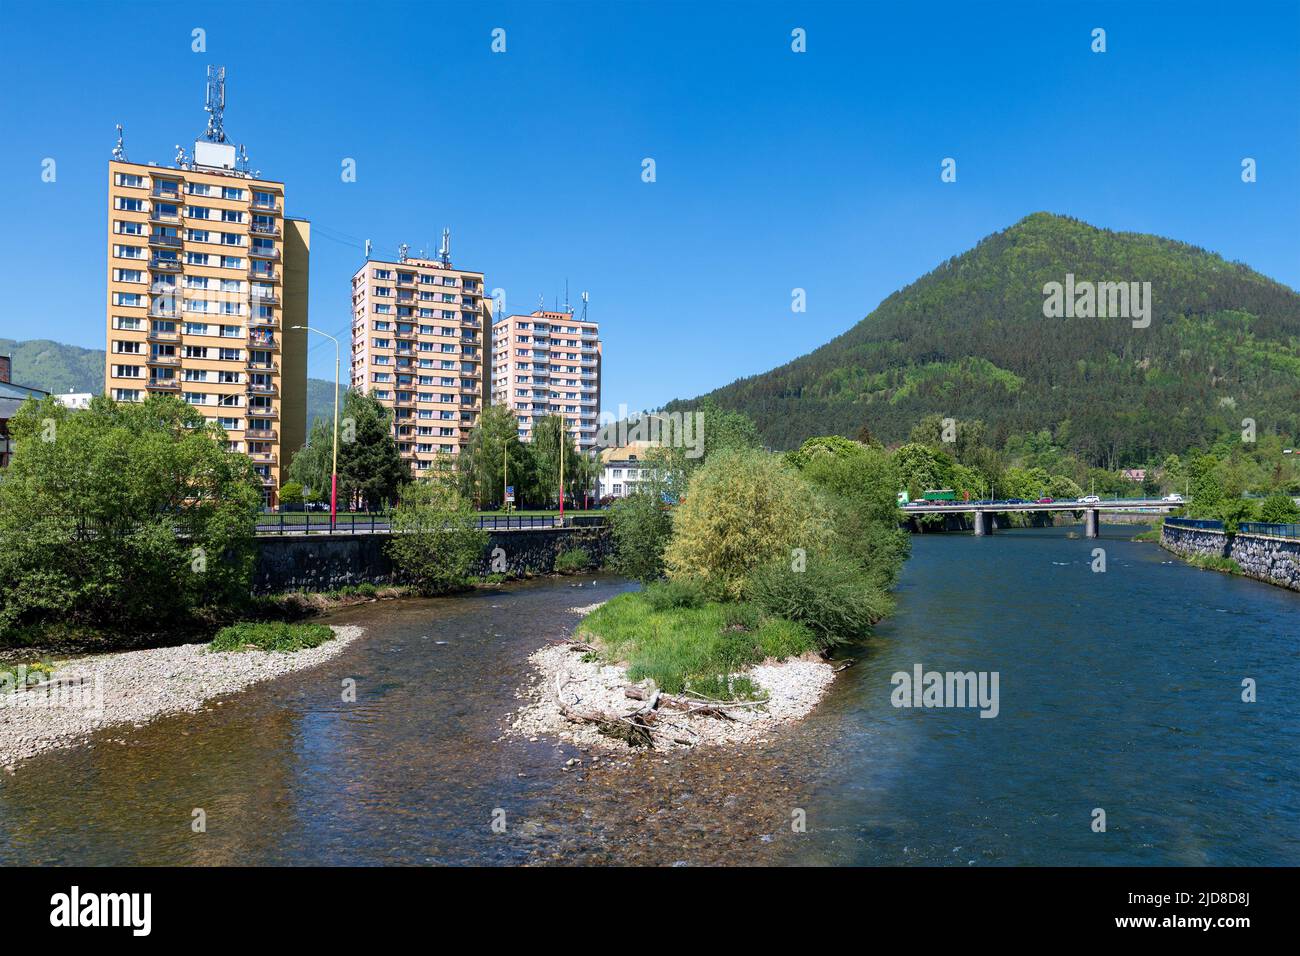 River Vah in Ruzomberok, Slovakia Stock Photo